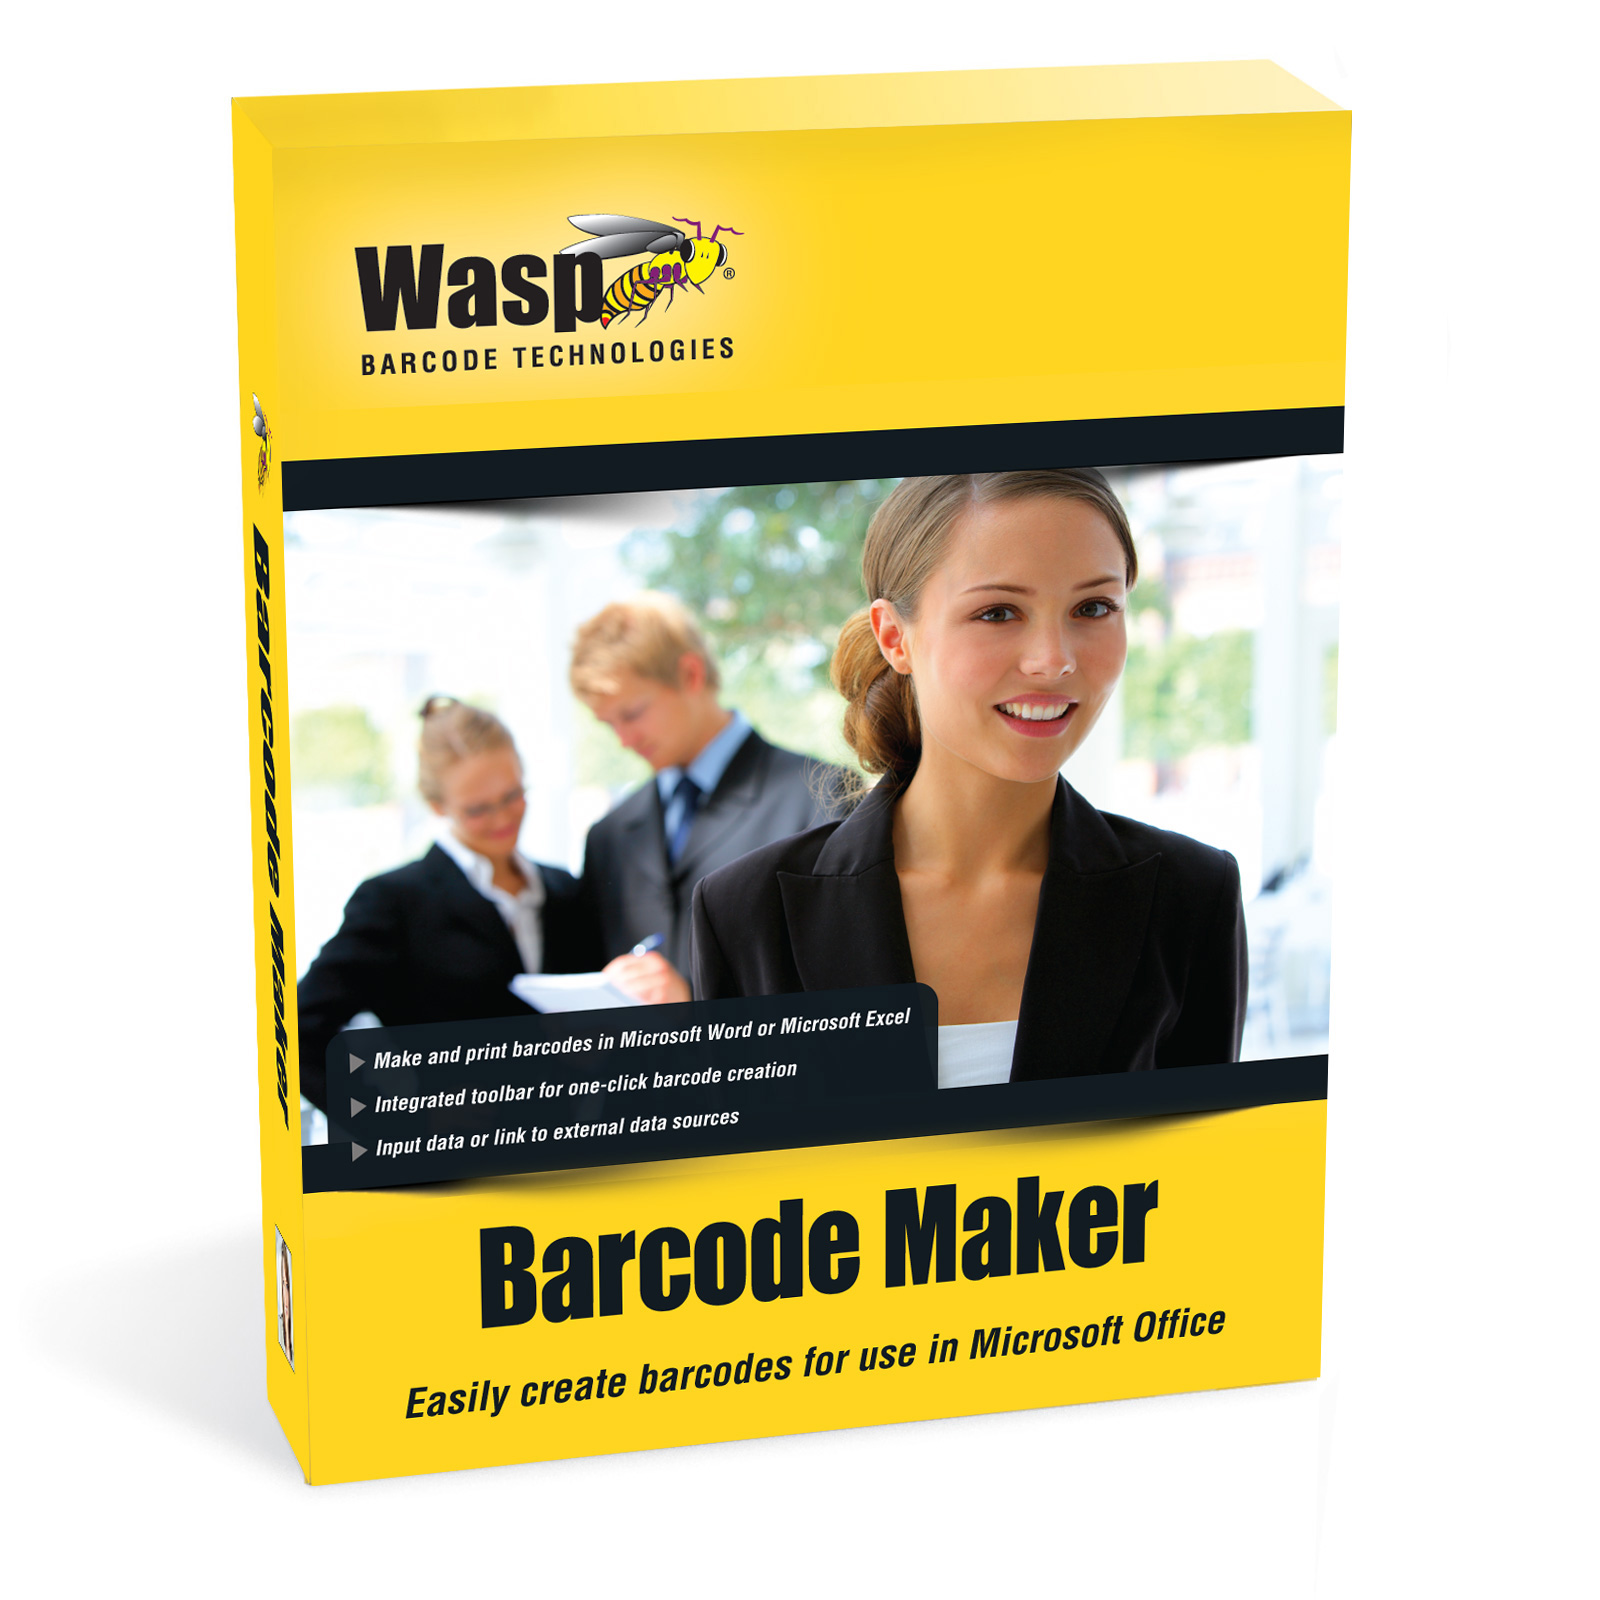 wasp barcode maker